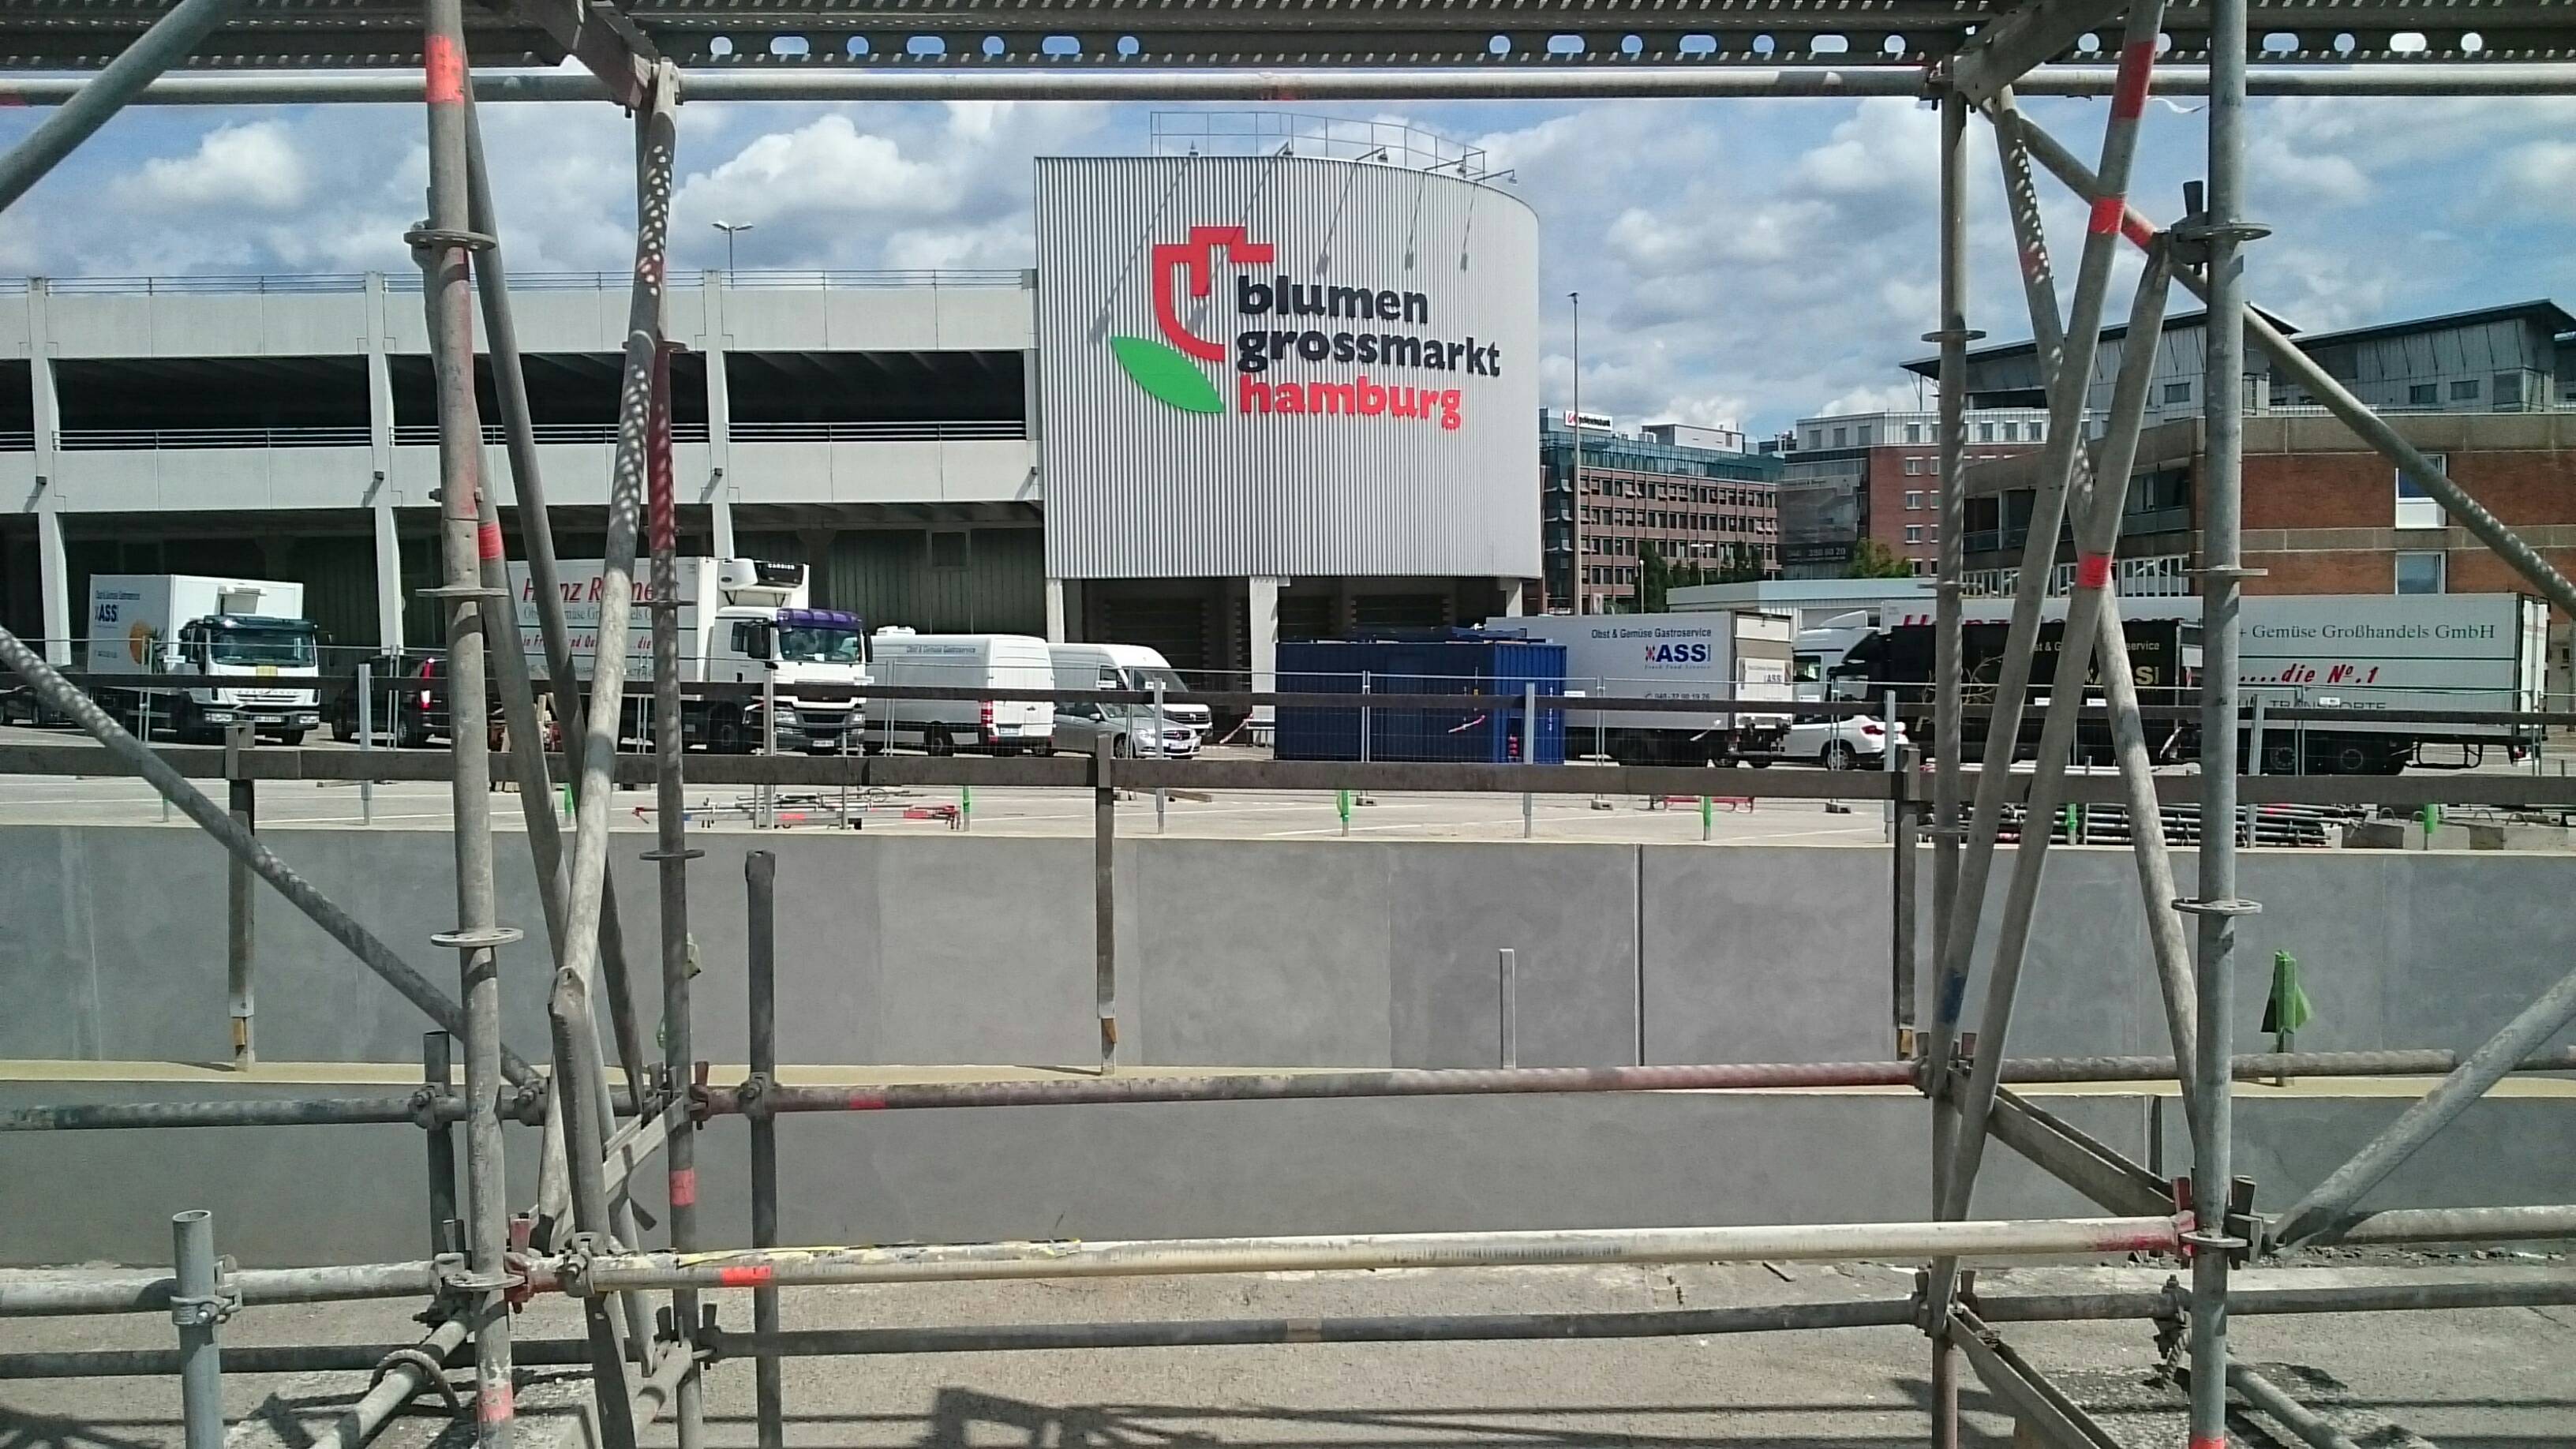 Bild 1 Blumengroßmarkt Hamburg GmbH in Hamburg